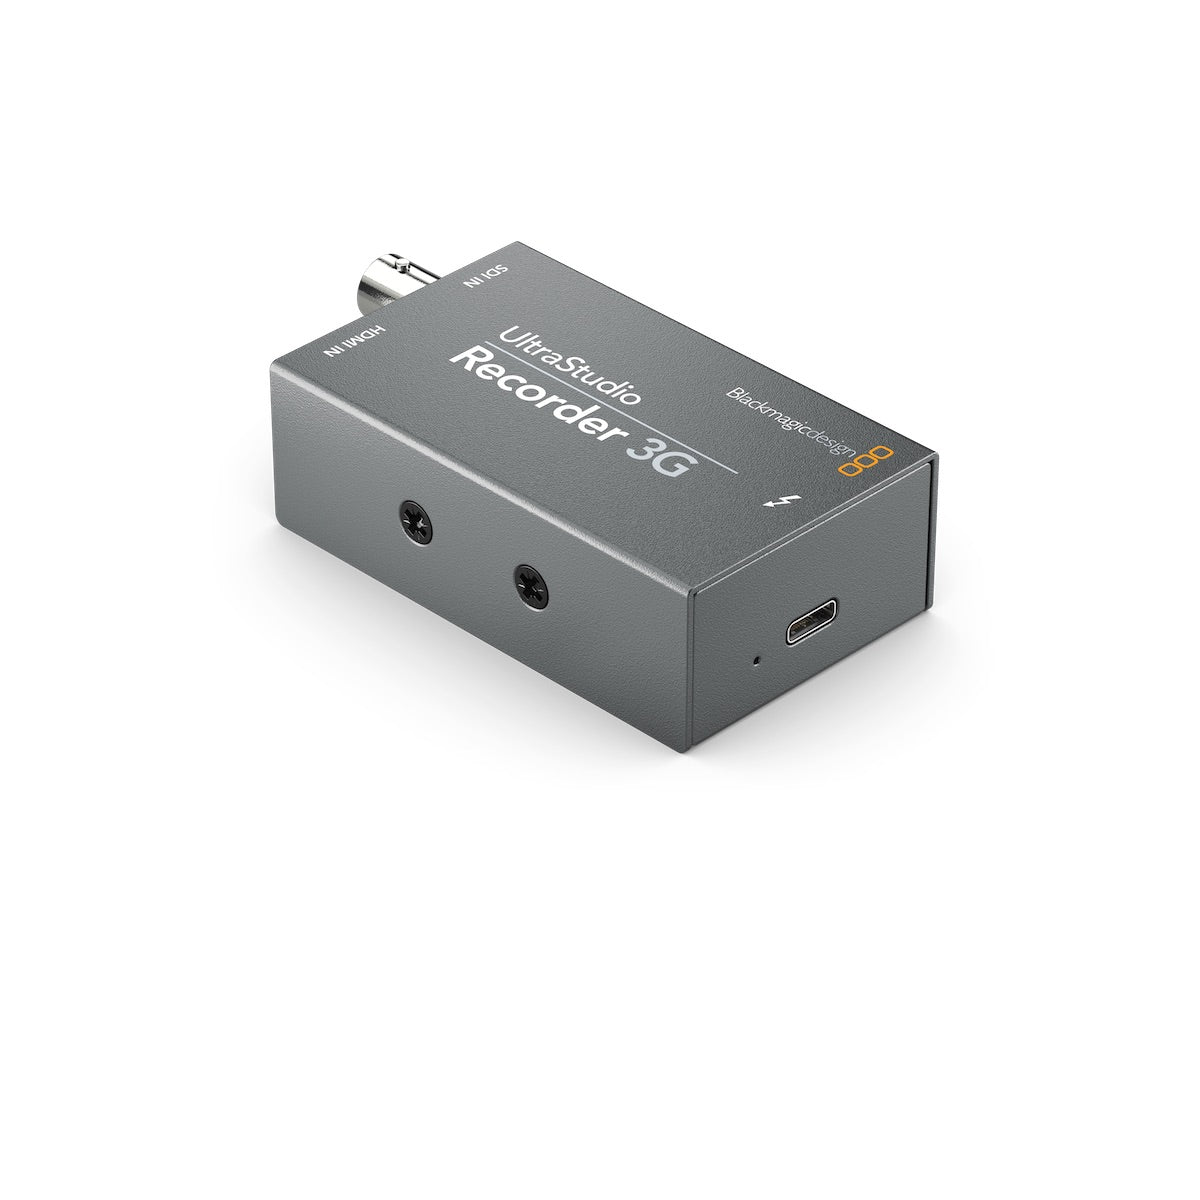 Blackmagic Design UltraStudio Recorder 3G - Thunderbolt 3 Adapter